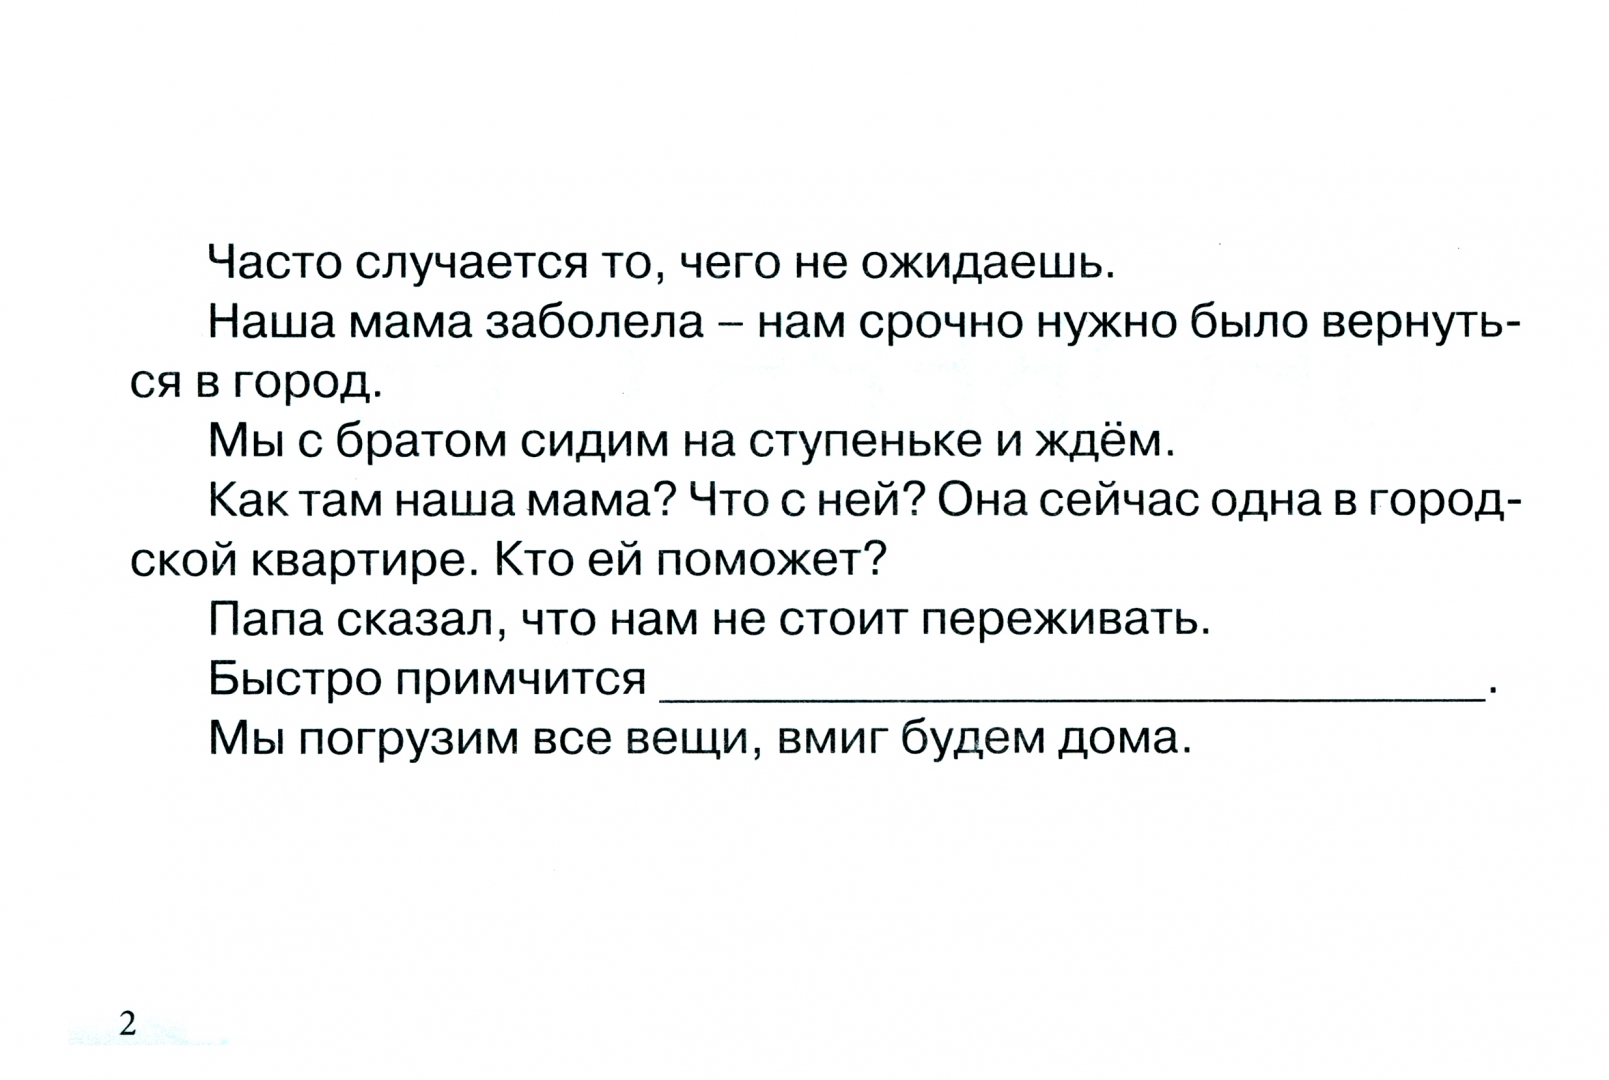 Иллюстрация 1 из 5 для Русский язык и чтение. Проверь себя. 2 класс - Л. Тарасова | Лабиринт - книги. Источник: Лабиринт